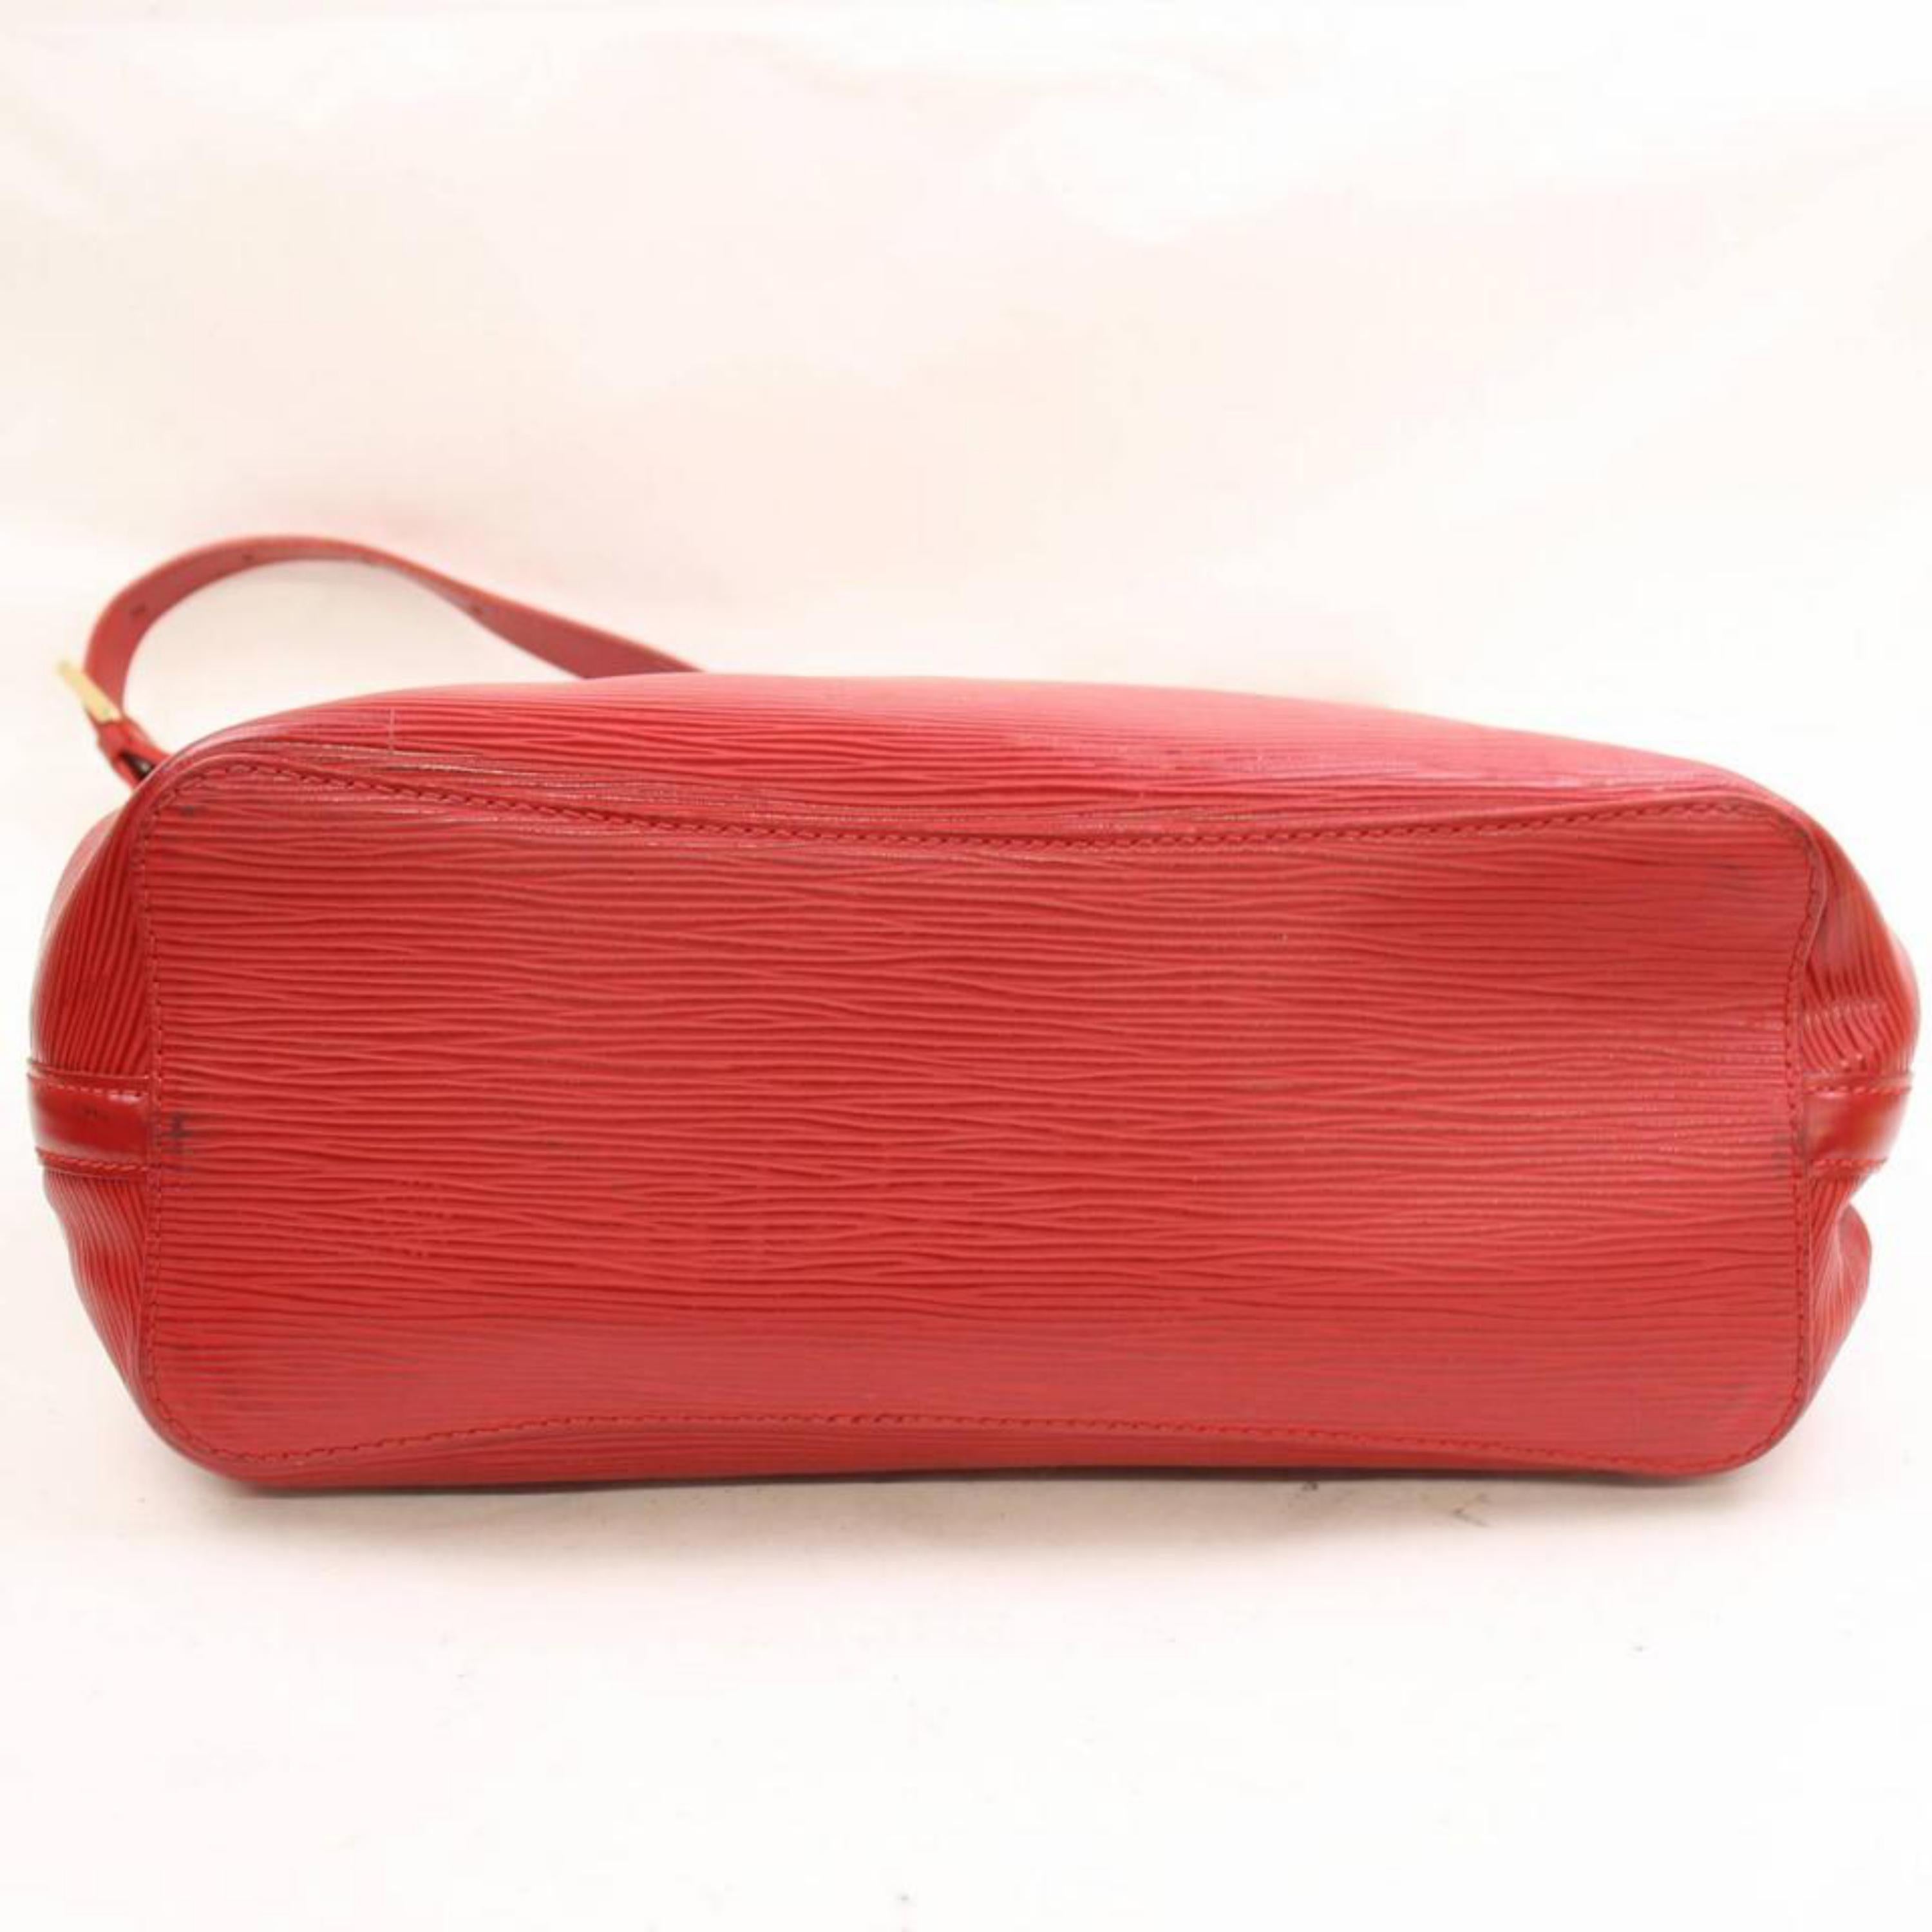 Louis Vuitton Mandara Epi Mm Hobo 868362 Red Leather Shoulder Bag For Sale 3